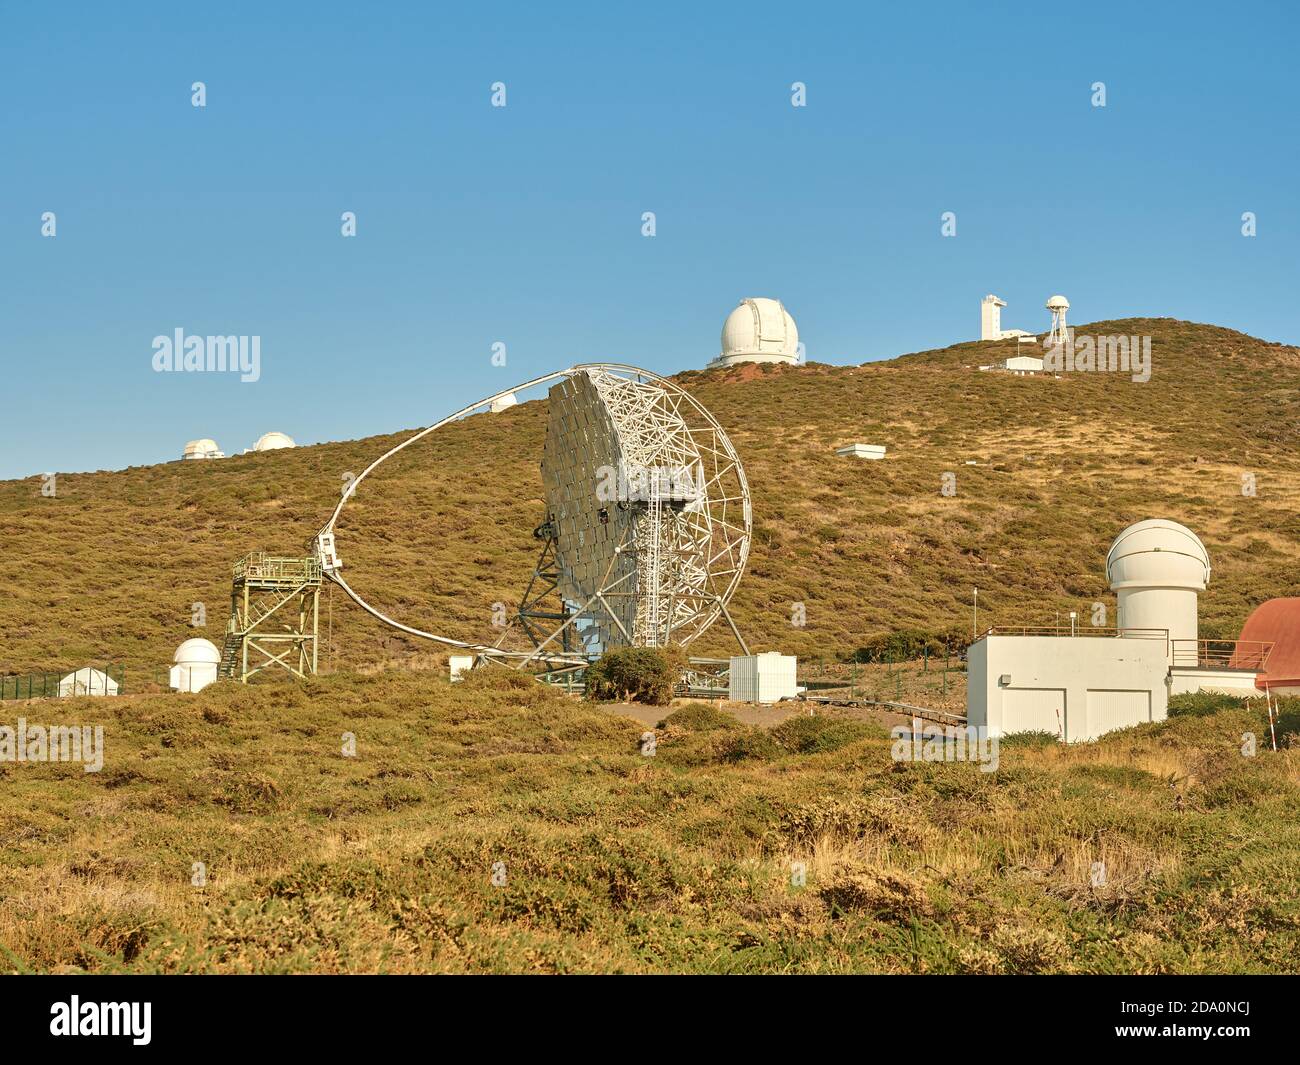 Vari telescopi moderni, tra cui MAGIC o Major Atmospheric gamma Imaging Cherenkov Telescopio situato sul pendio della collina all'osservatorio astronomico sopra Foto Stock